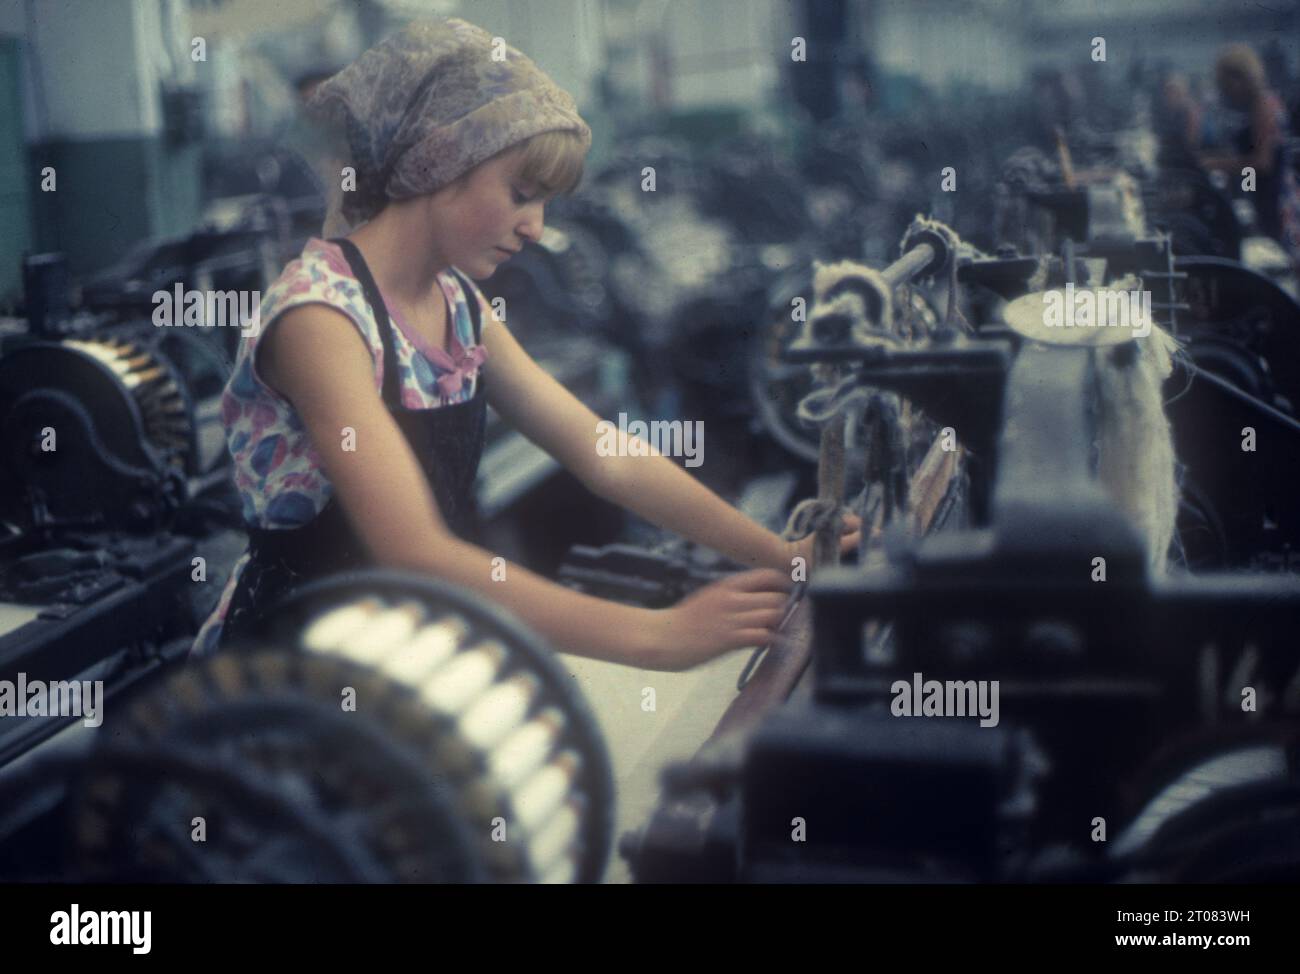 UDSSR. Usbekistan. Junge Russin, die in einer Textilfabrik in Taschkent arbeitet. Stockfoto